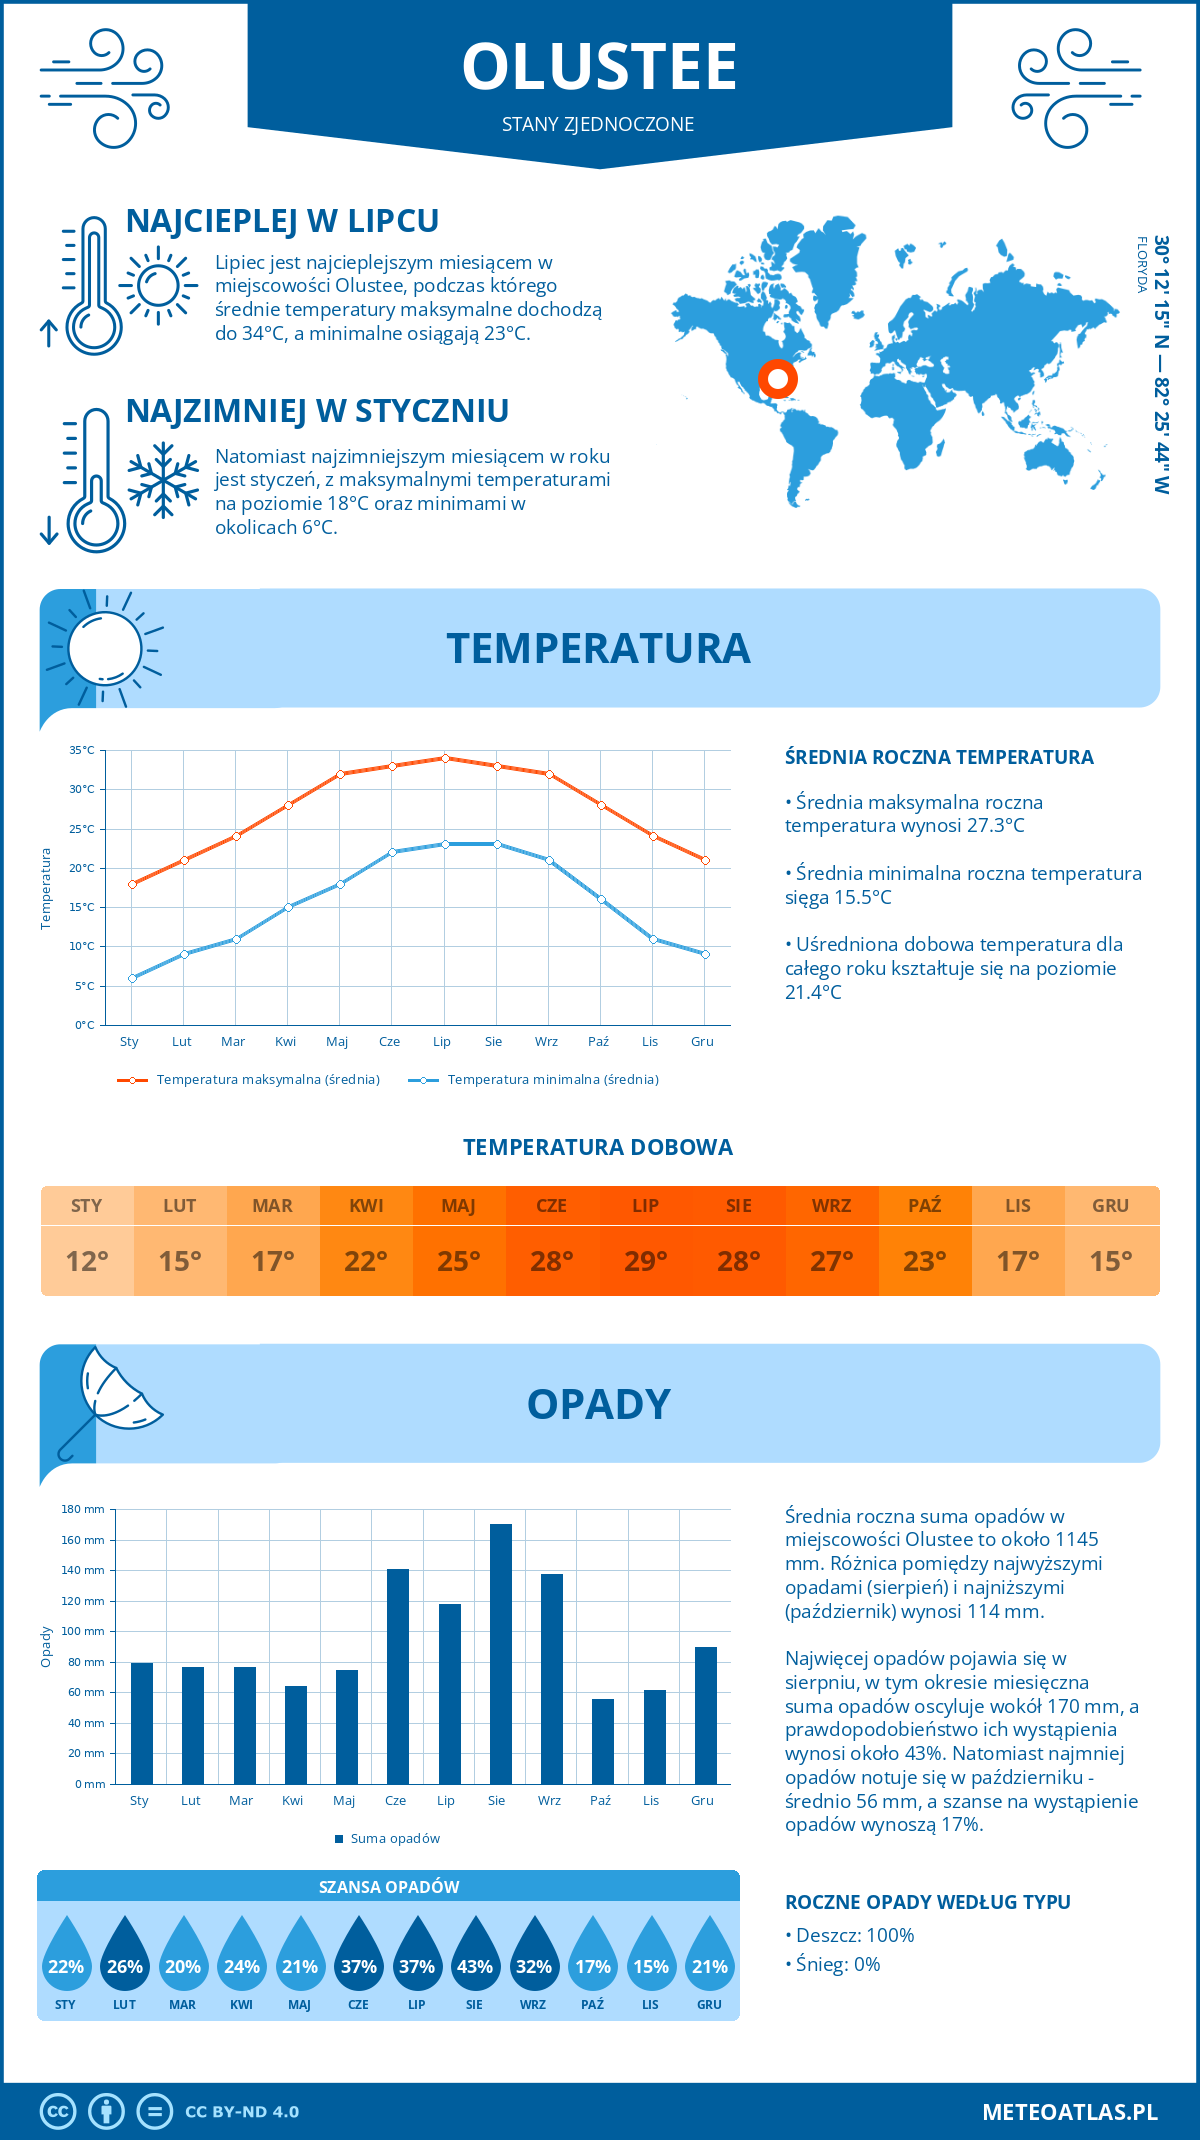 Pogoda Olustee (Stany Zjednoczone). Temperatura oraz opady.